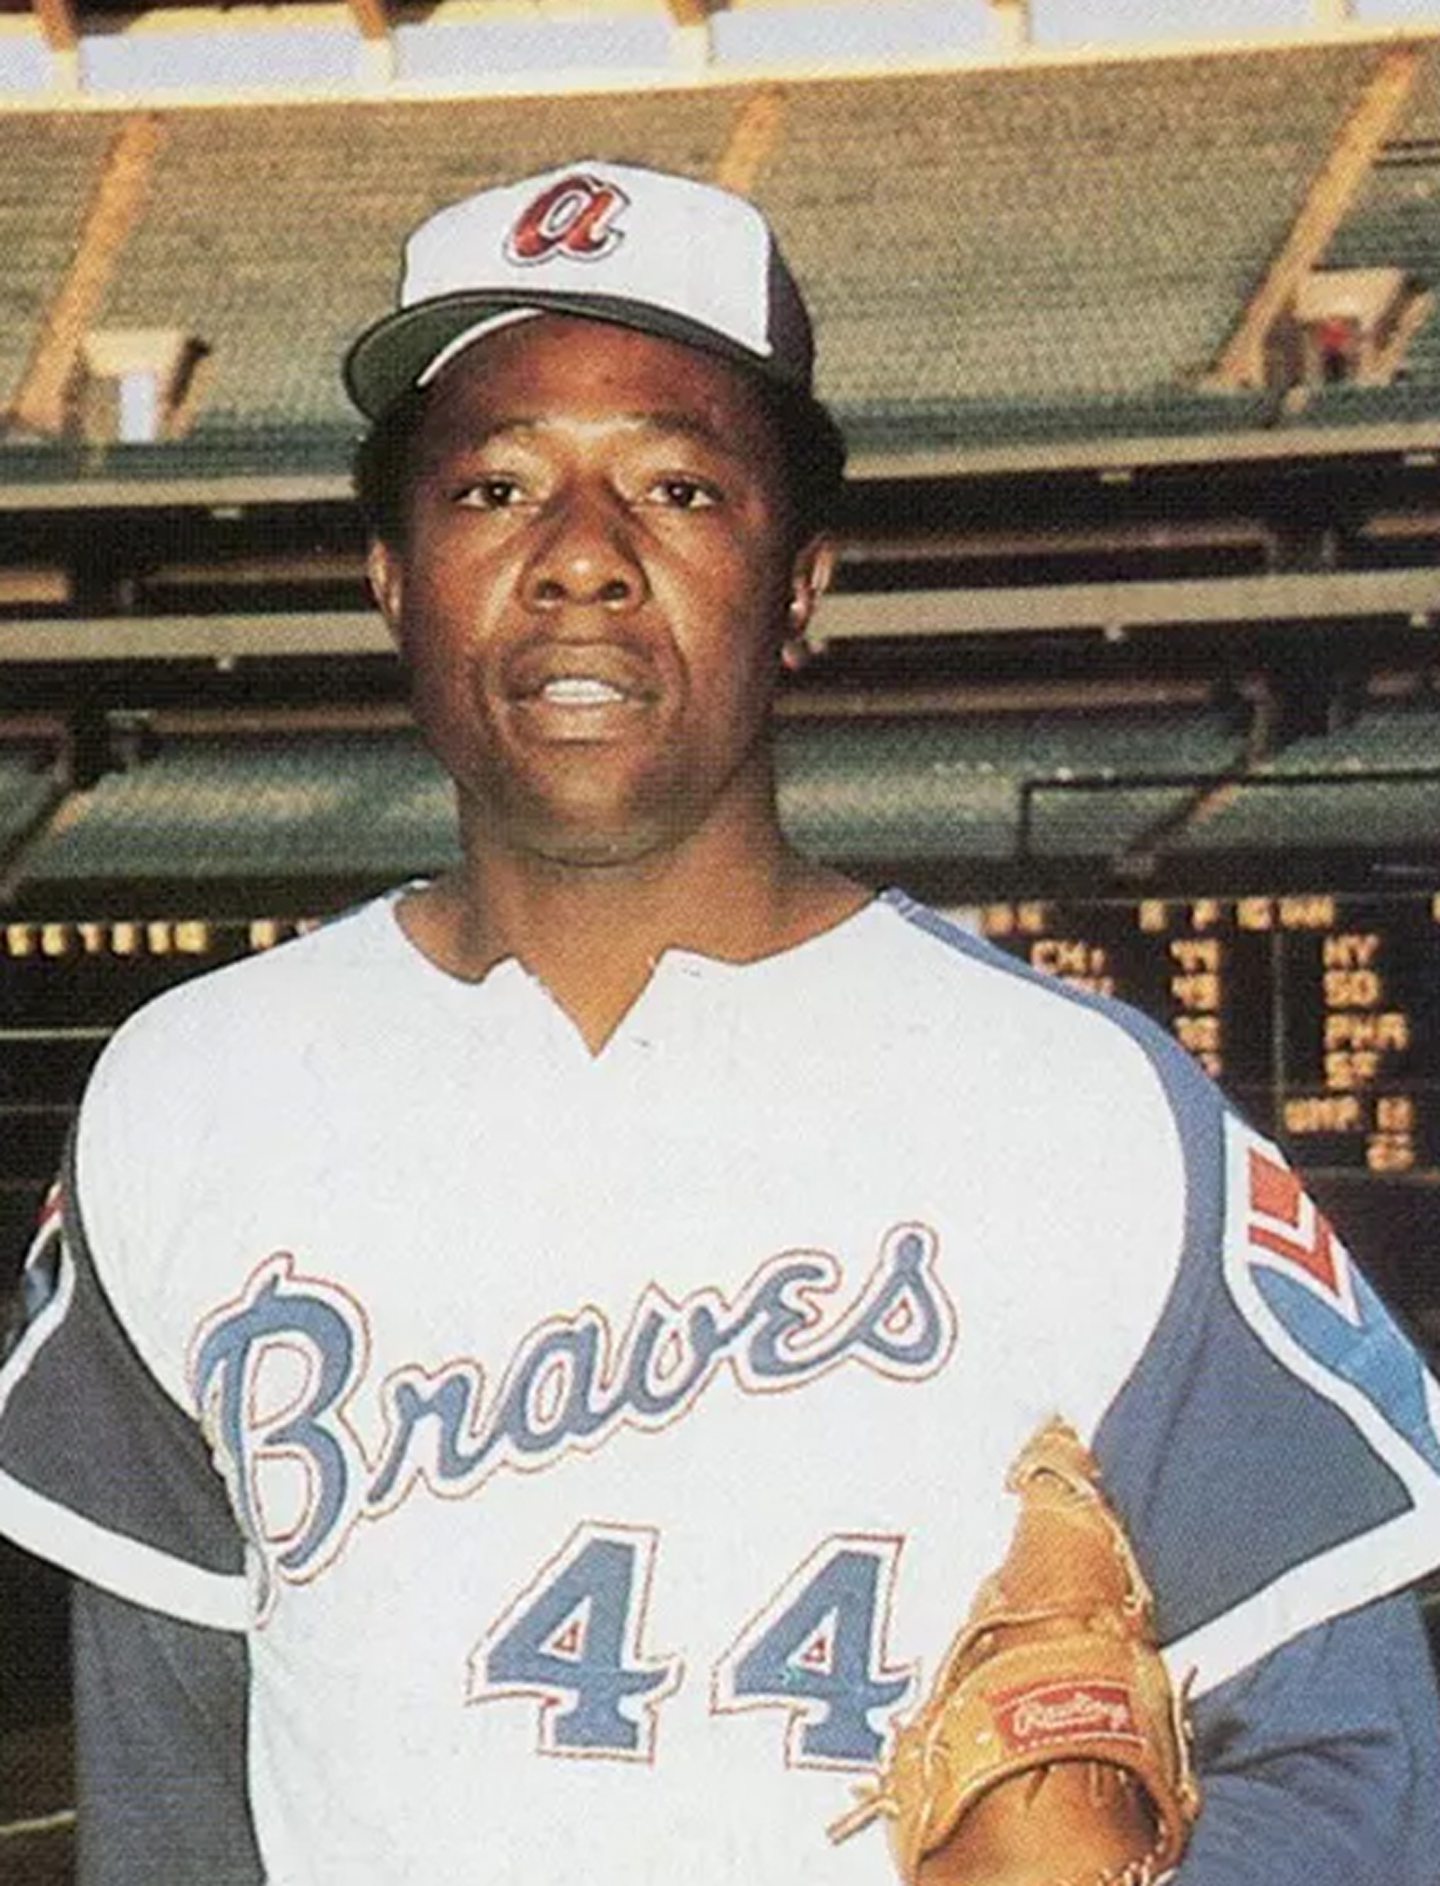 Hank Aaron in his Atlanta Braves uniform